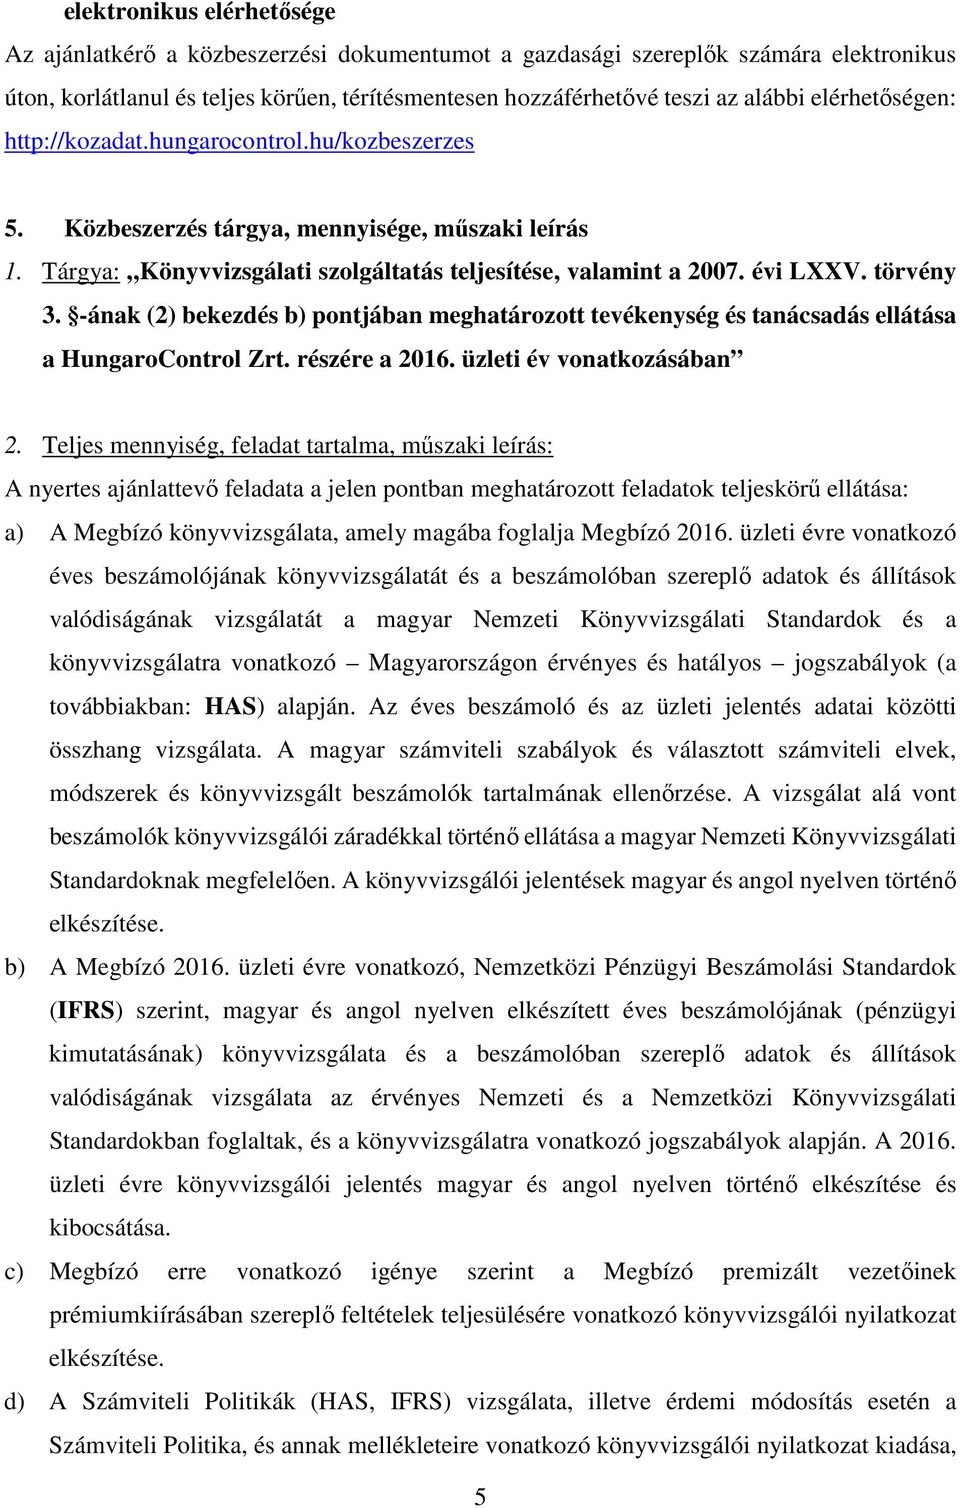 törvény 3. -ának (2) bekezdés b) pontjában meghatározott tevékenység és tanácsadás ellátása a HungaroControl Zrt. részére a 2016. üzleti év vonatkozásában 2.